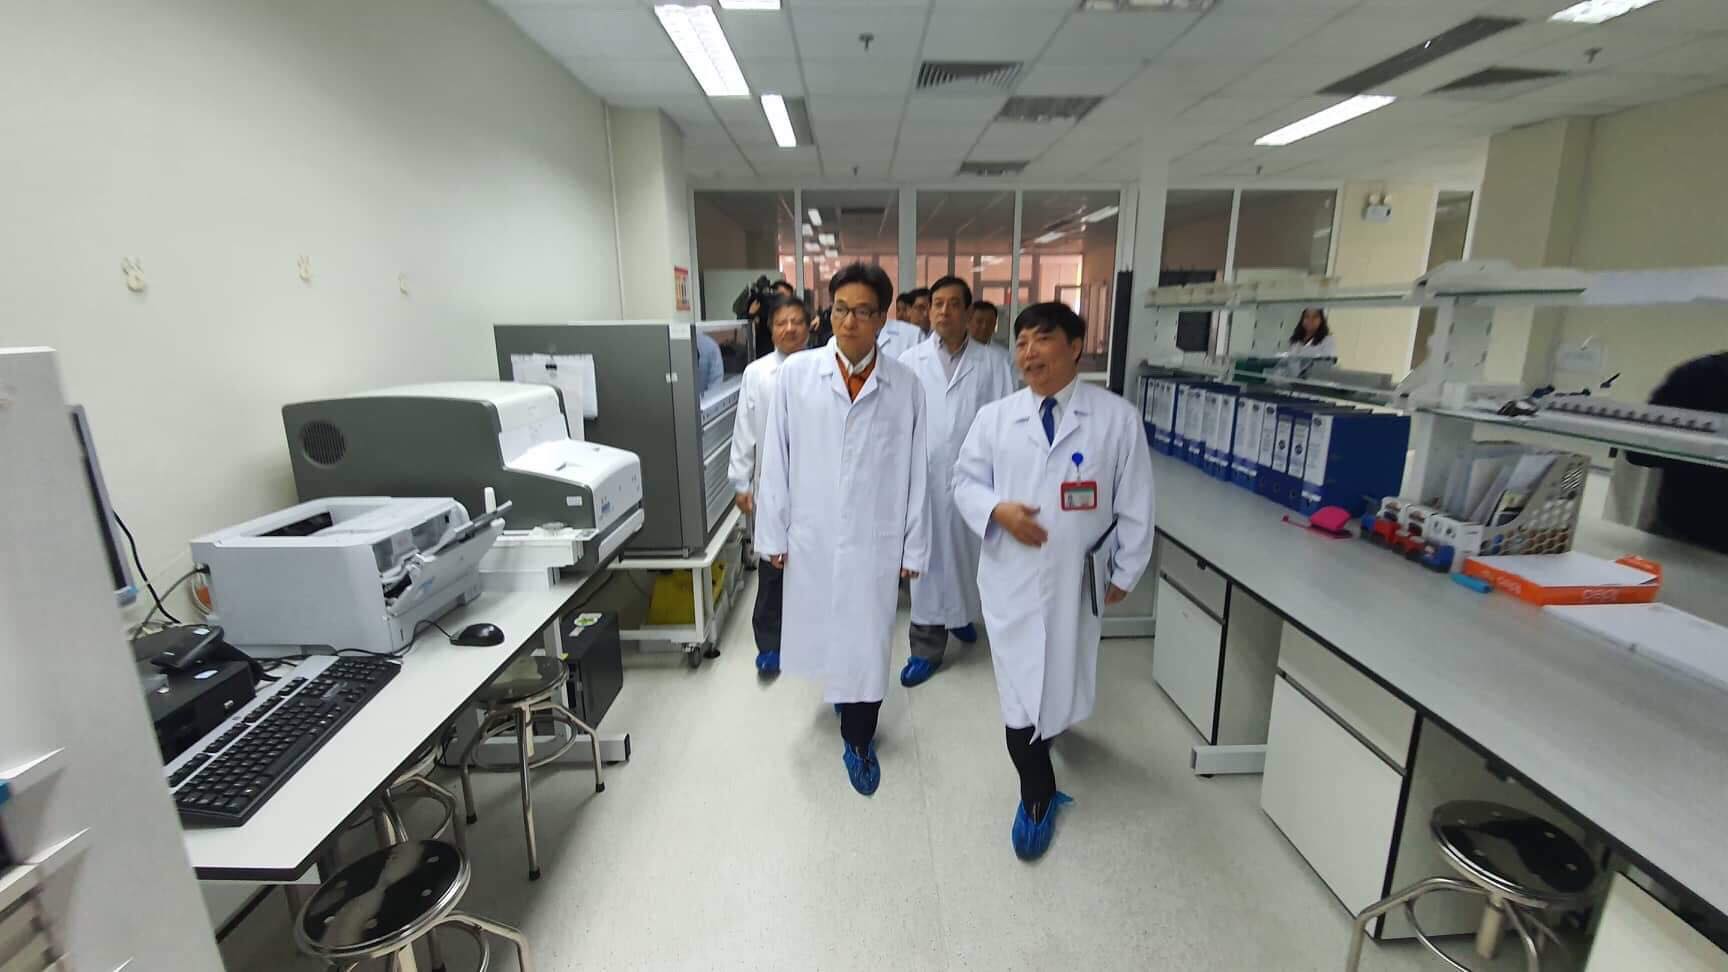 Phó Thủ tướng Vũ Đức Đam cùng Ban chỉ đạo phòng chống dịch của Bộ Y tế đã kiểm tra Bệnh viện Bệnh nhiệt đới Trung ương.